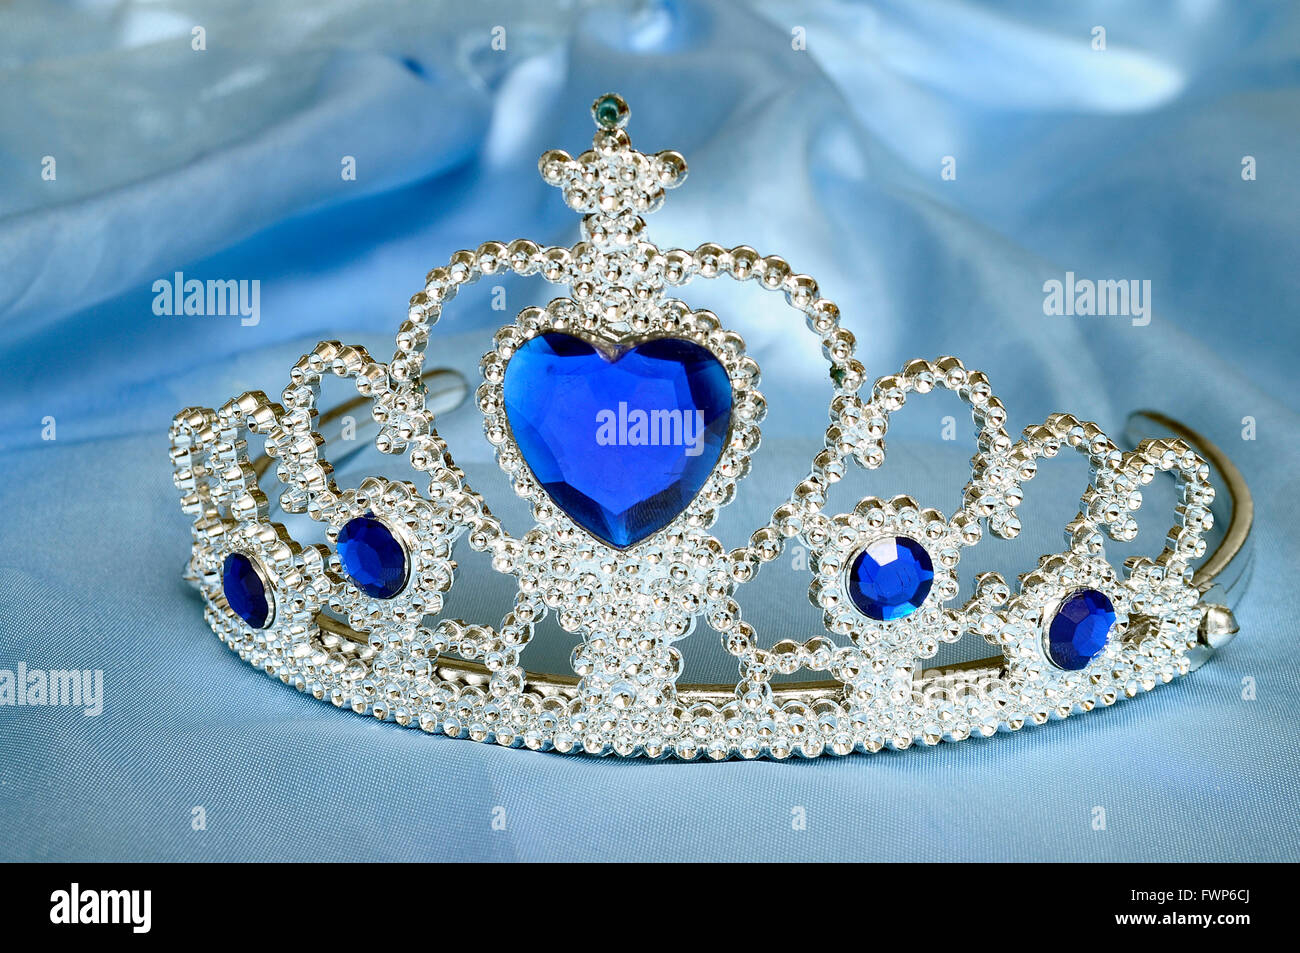 Spielzeug-Diadem mit Diamanten und blaue Juwel, wie eine Prinzessin Krone  auf blauem satin Gewebe Stockfotografie - Alamy